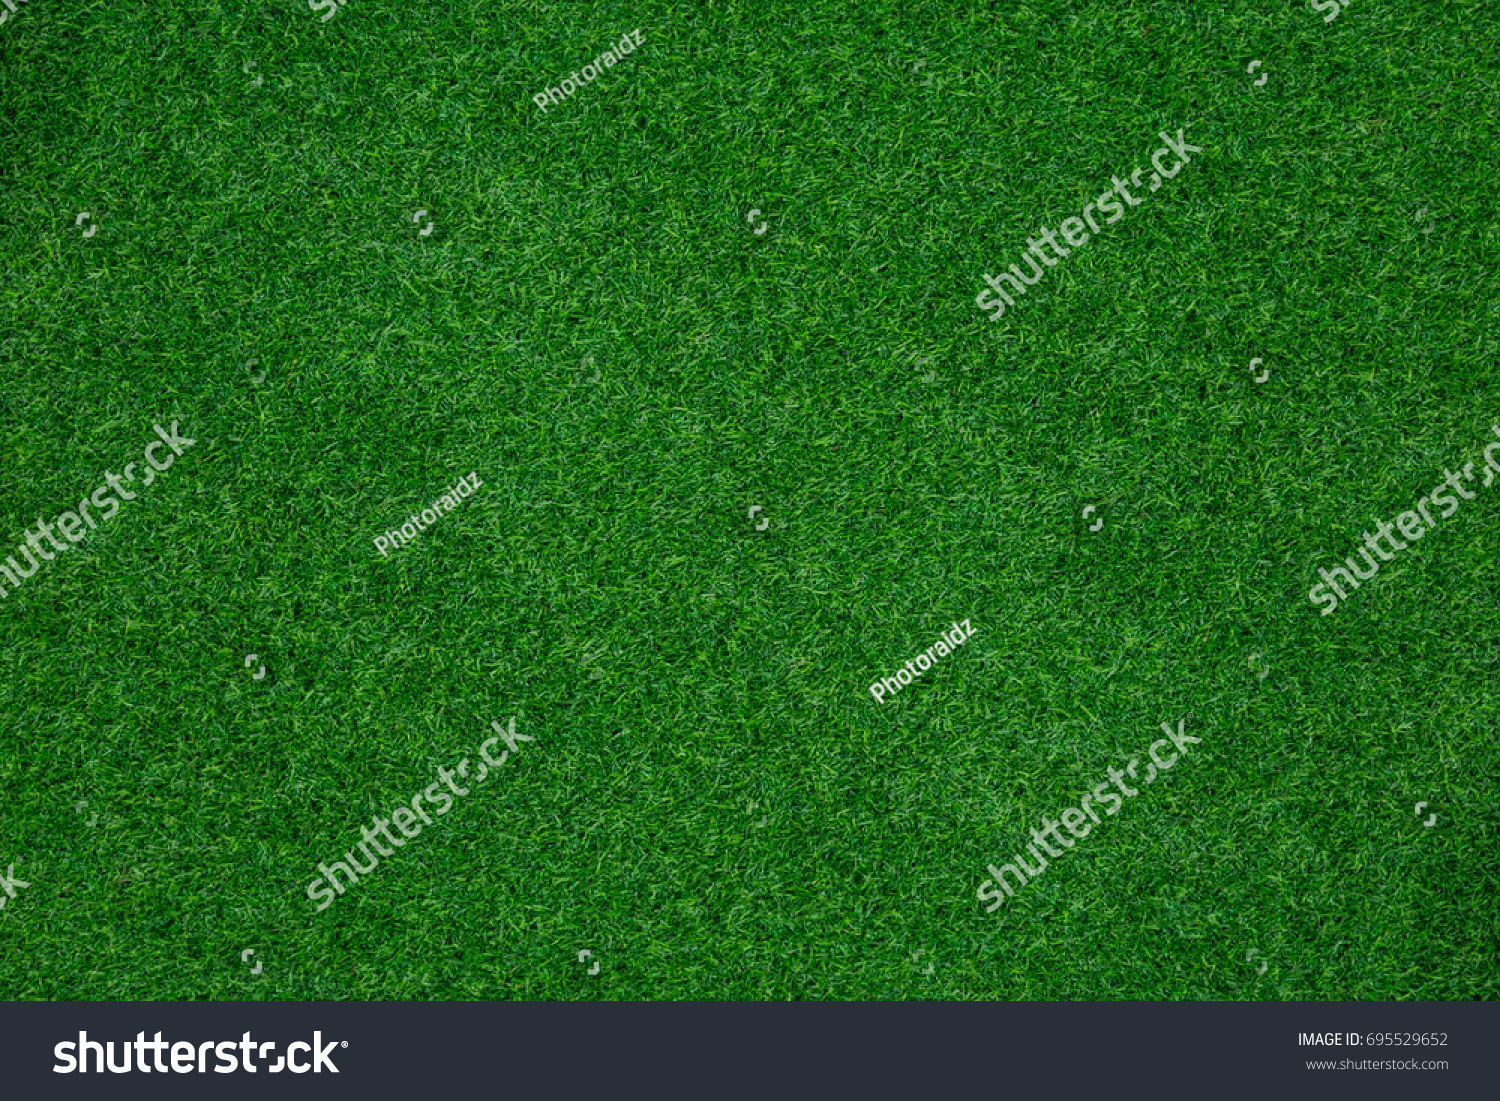 green grass texture background #695529652